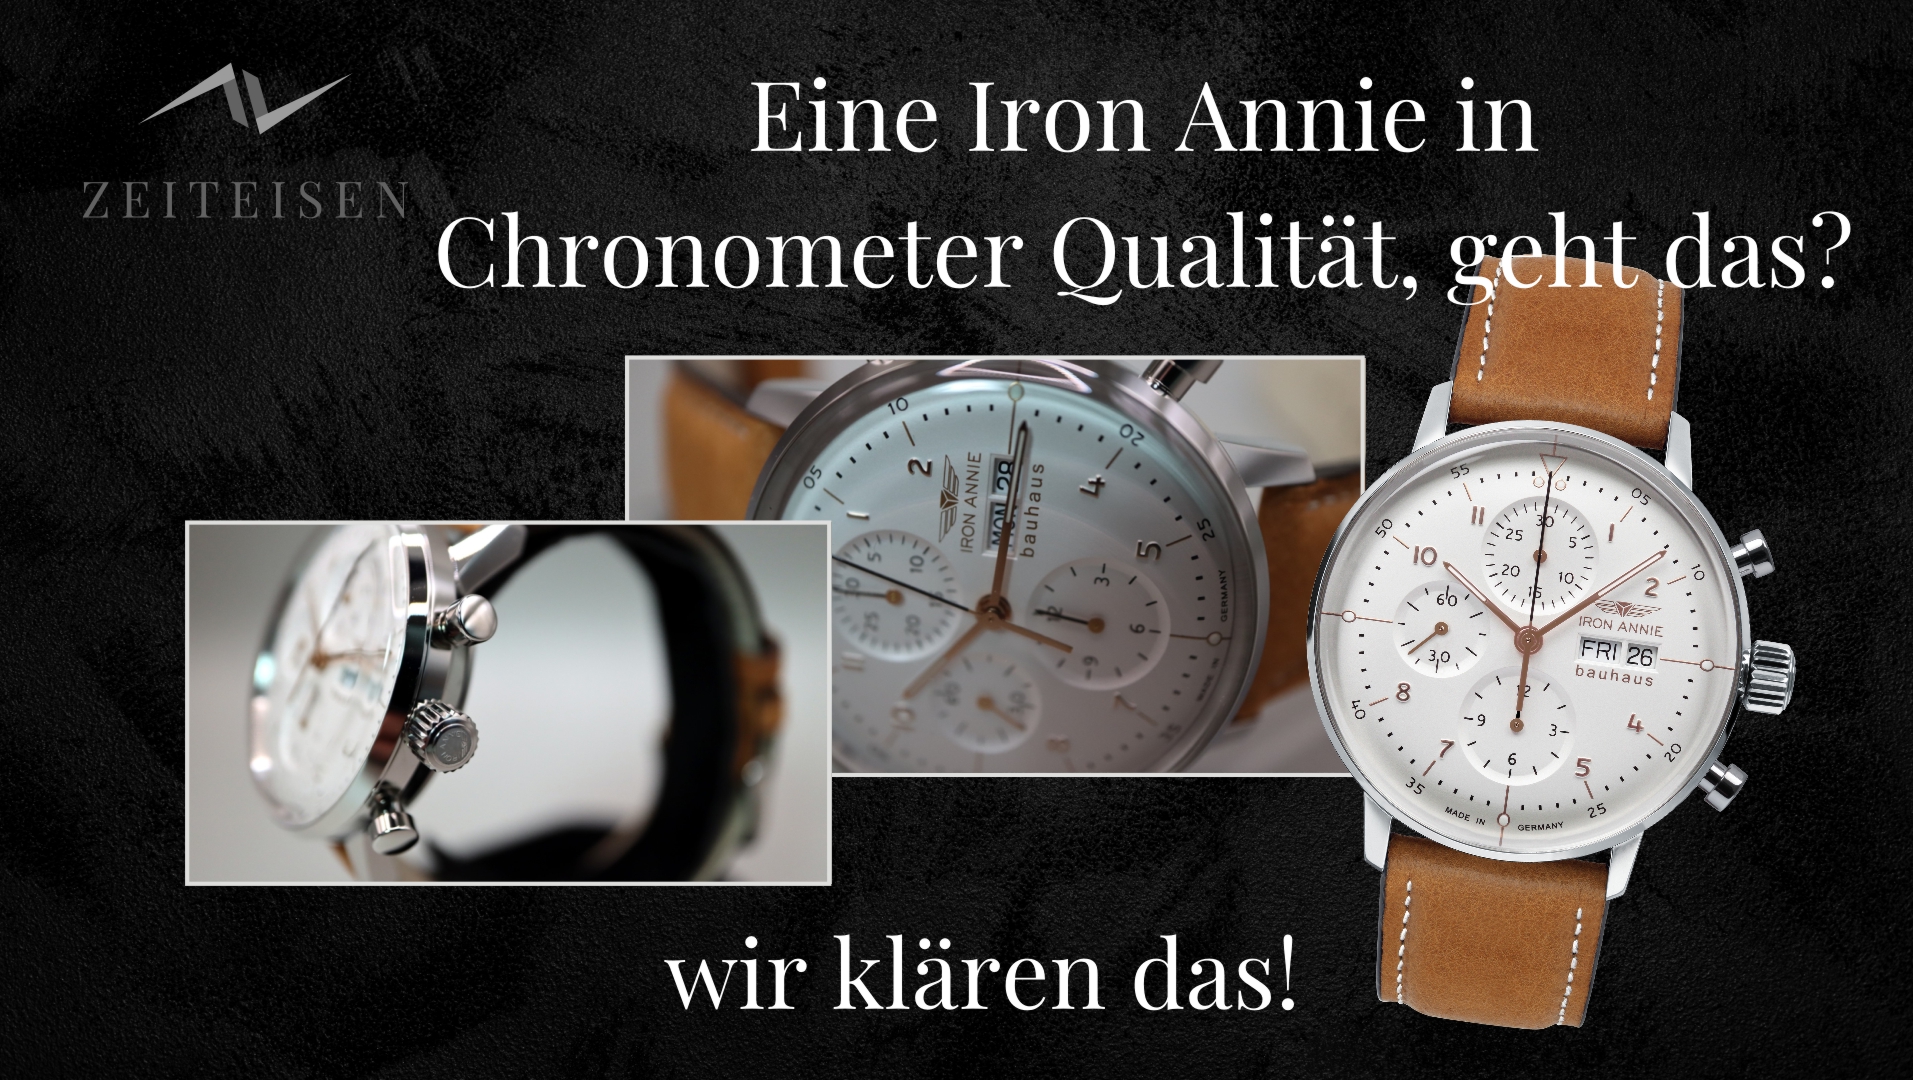 Video zur Uhrenvorstellung Iron Annie Bauhaus Chrono